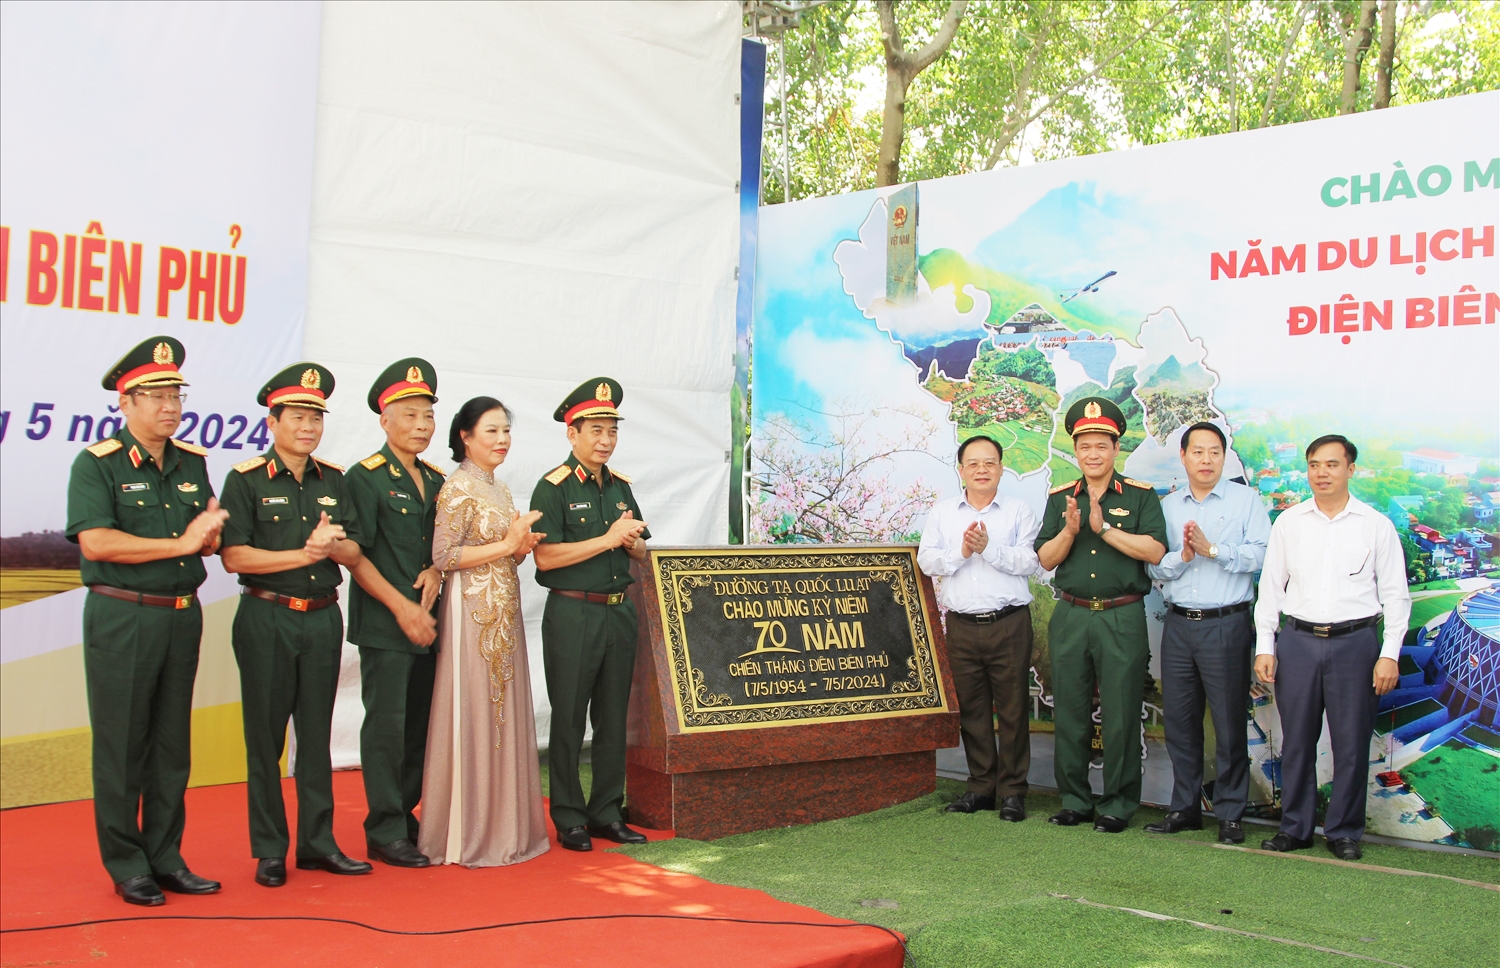 Đại tướng Phan Văn Giang - Ủy viên Bộ Chính trị, Bộ trưởng Bộ Quốc phòng cùng lãnh đạo Tỉnh ủy, HĐND, UBND tỉnh Điện Biên gắn biển tên đường Tạ Quốc Luật